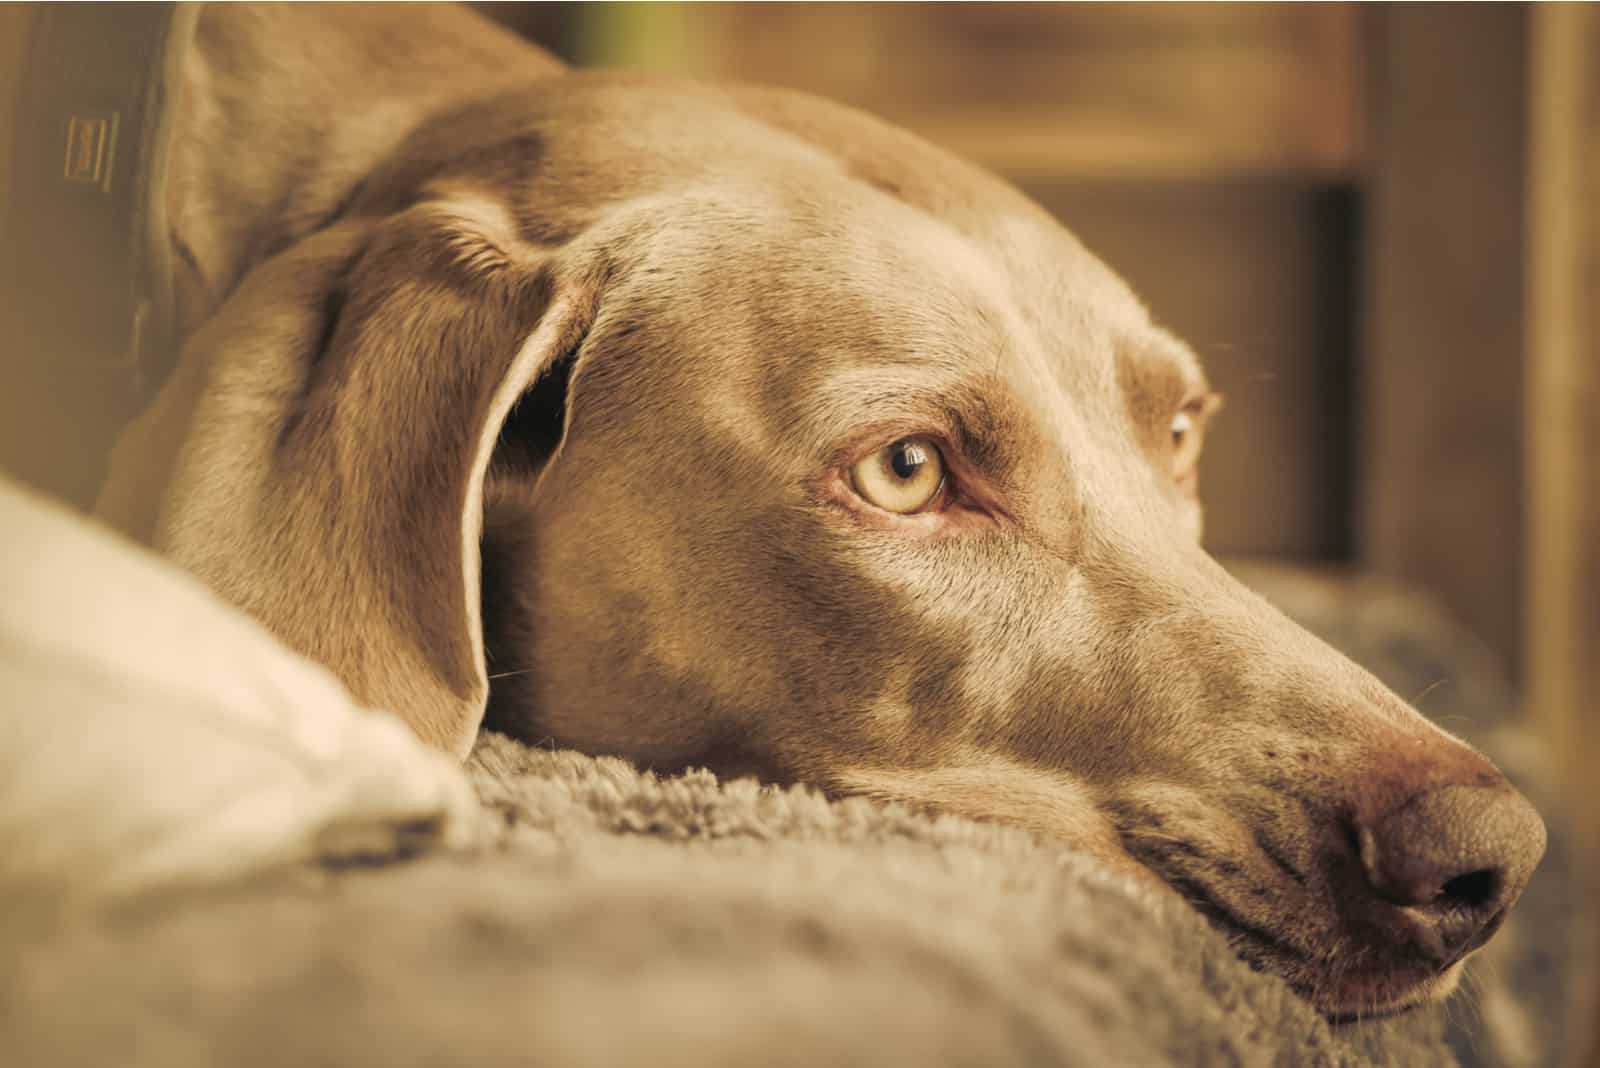 a portrait of a sad dog lying